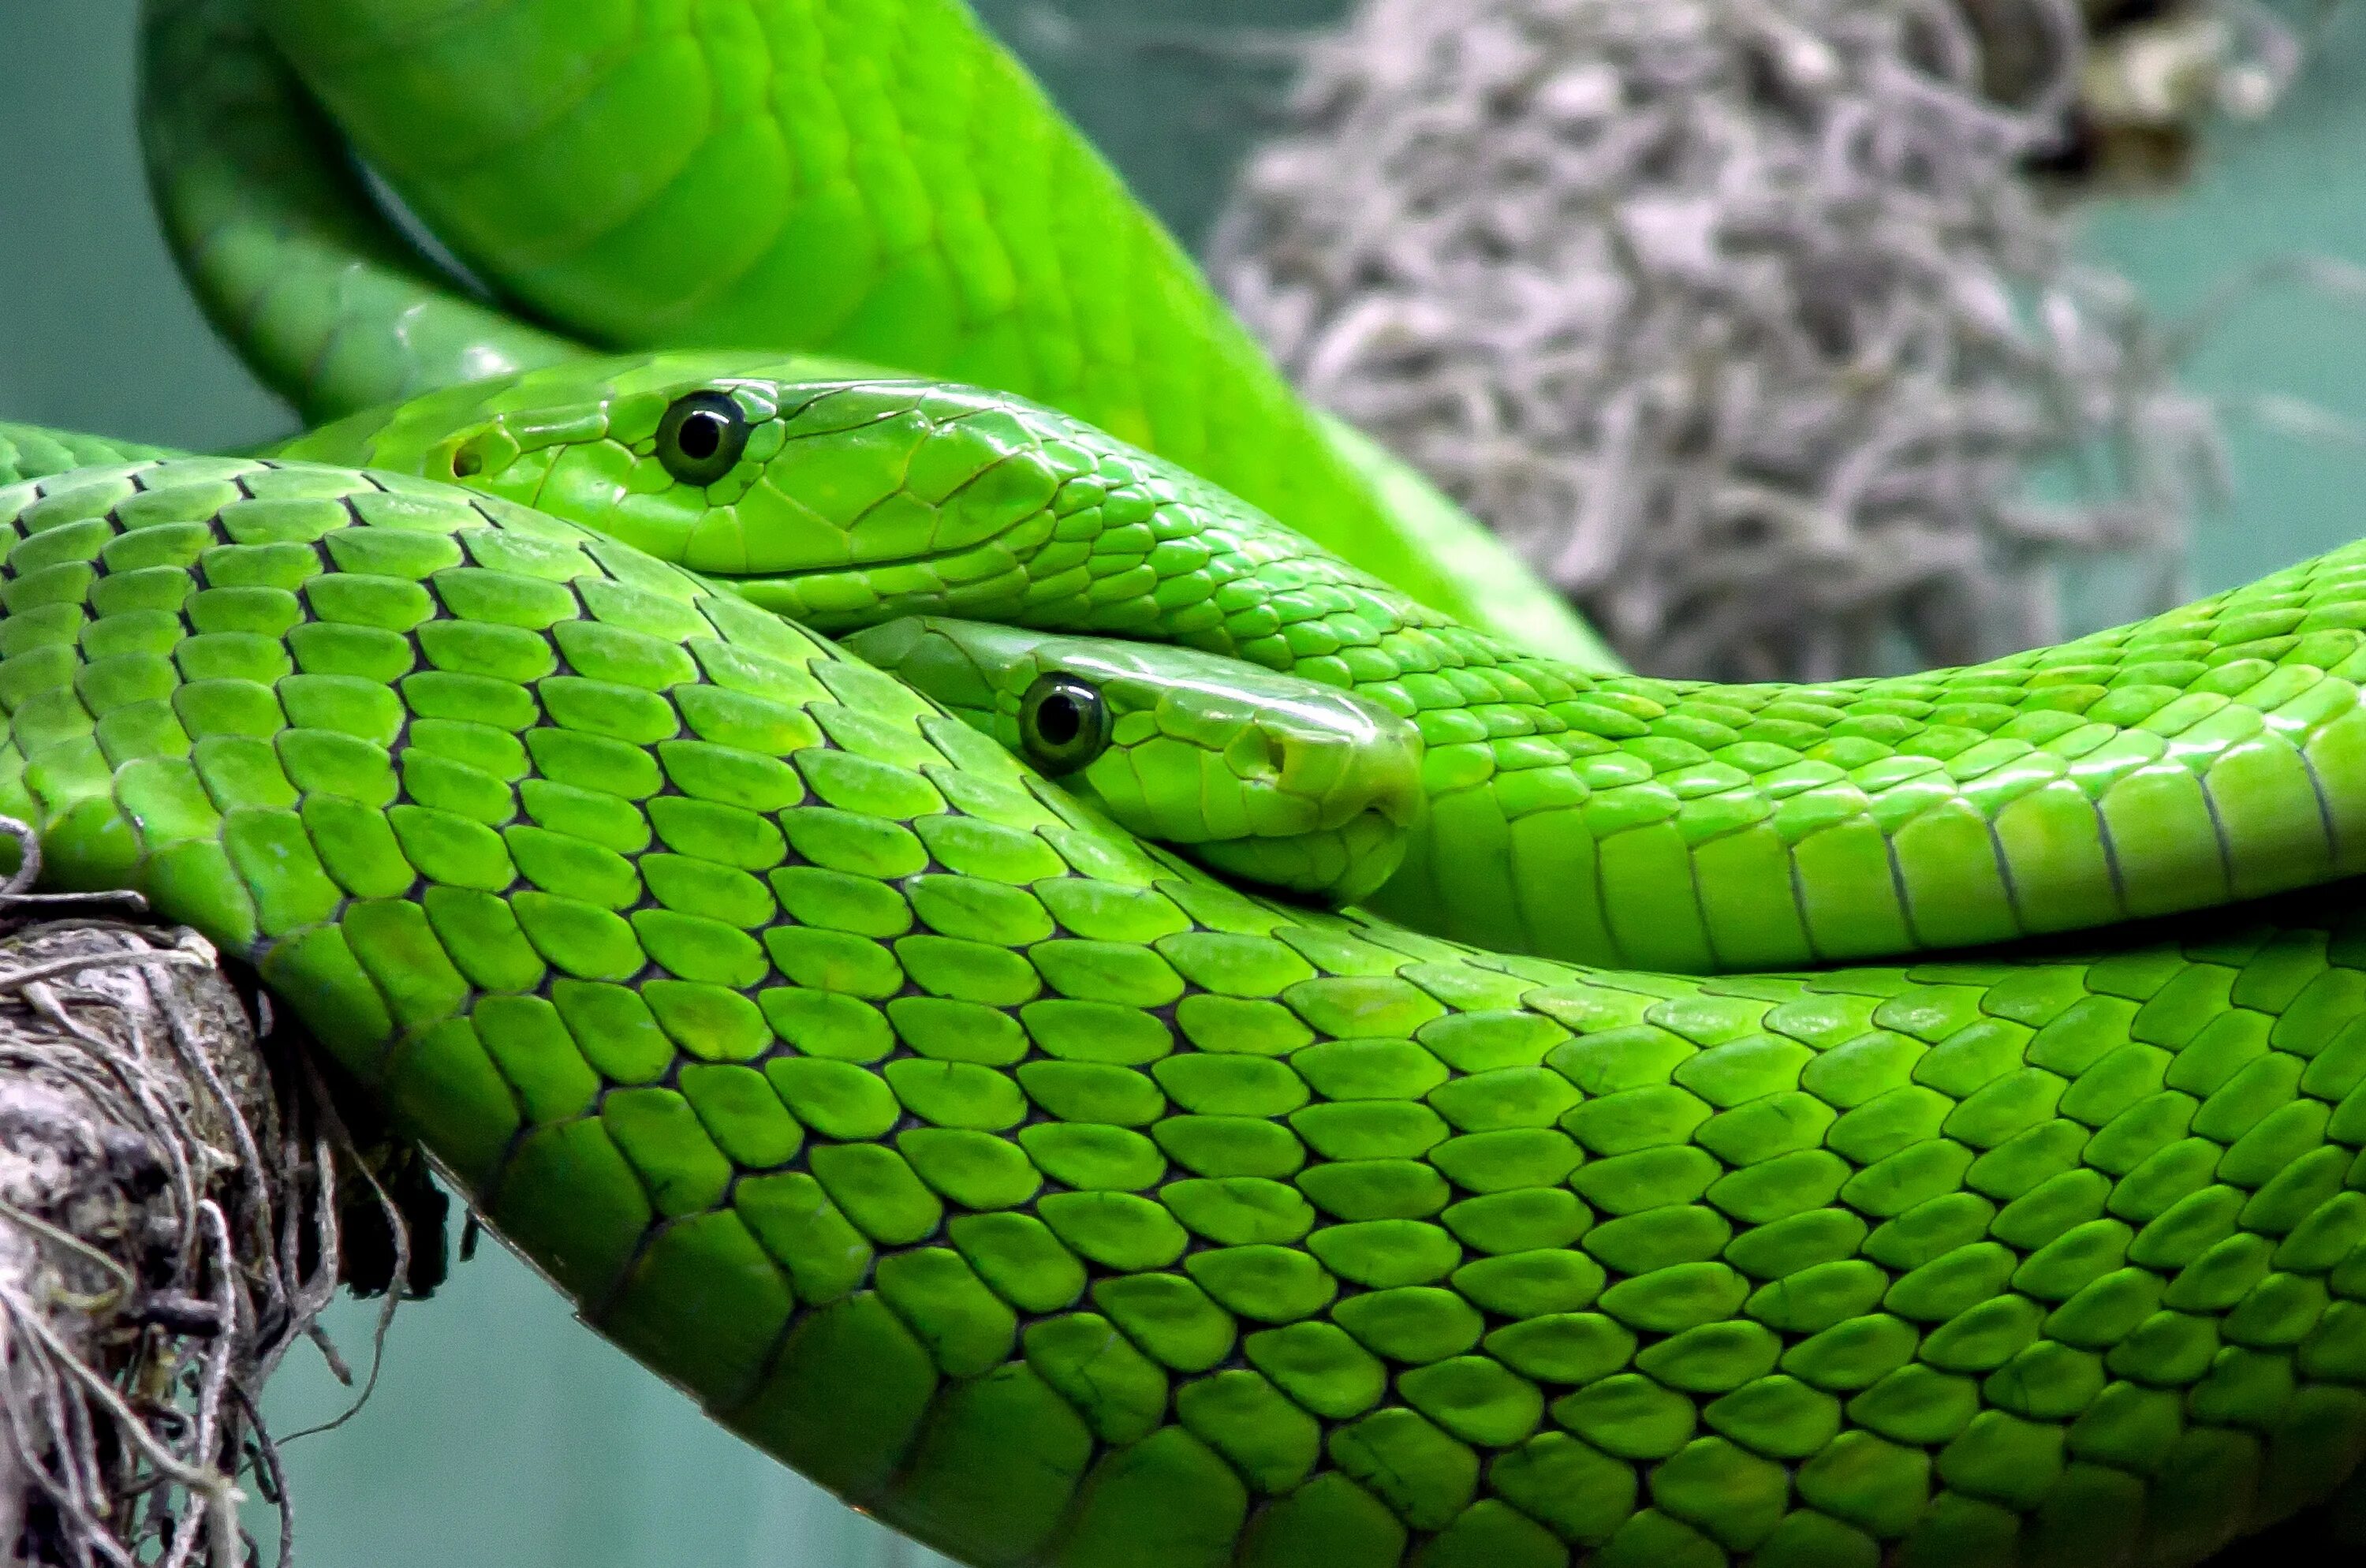 Snake x. Зелёная мамба змея. Змея мамба узкоголовая. Пресмыкающиеся змеи мамба. Зеленый полоз.